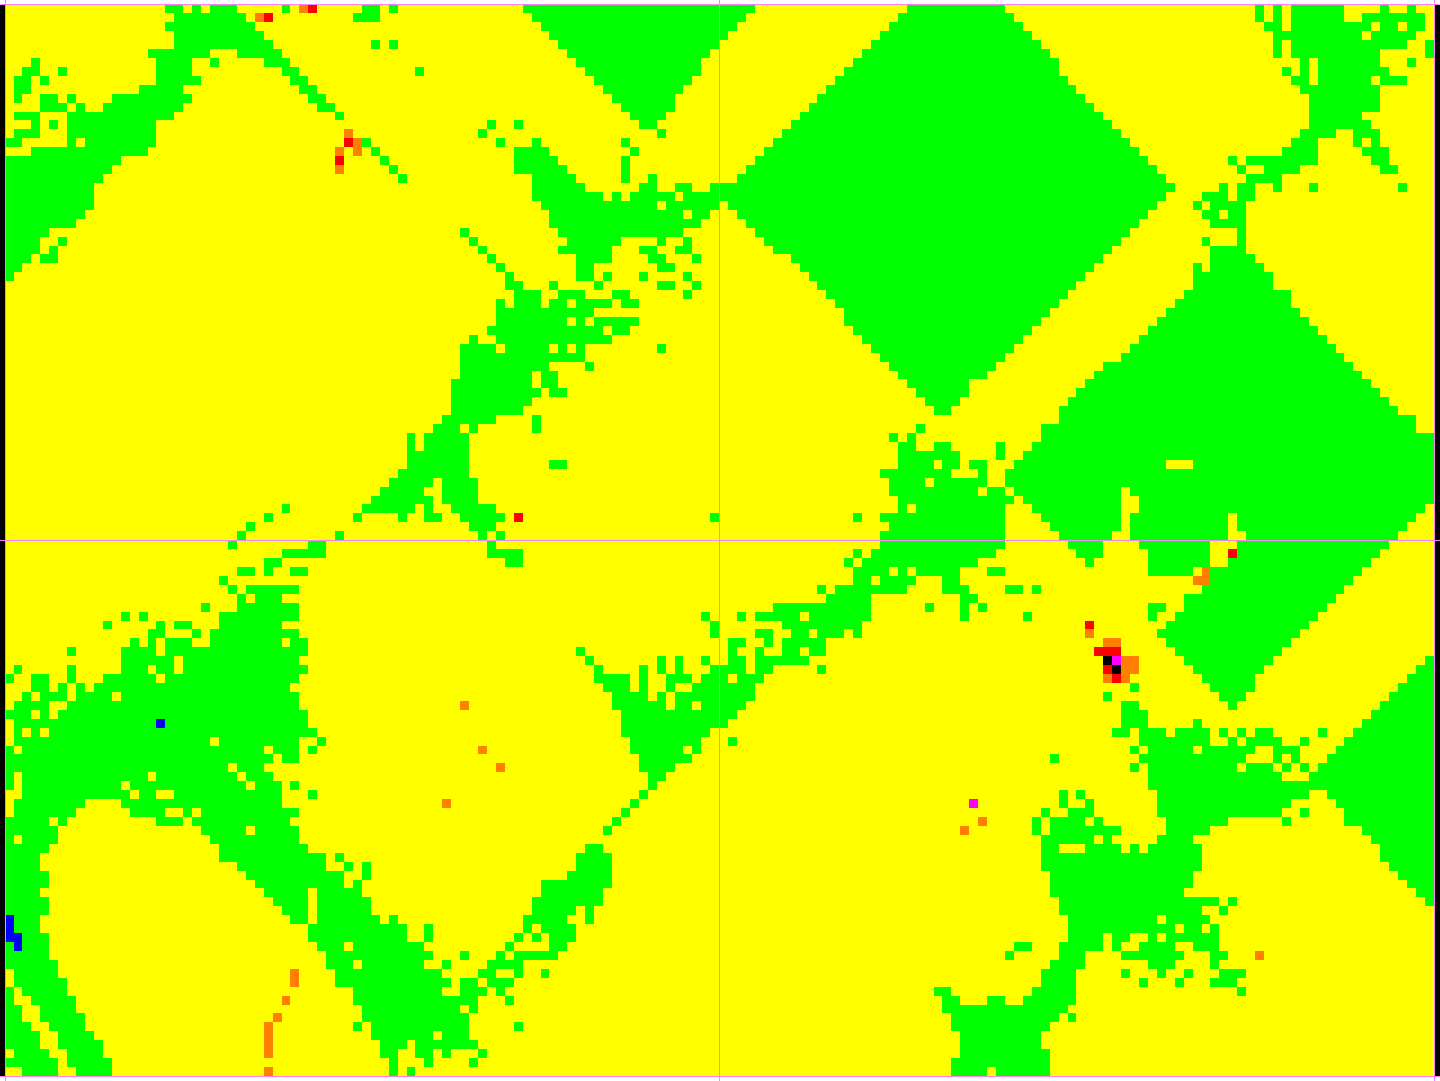 9.4 Bildefil som viser punkttetthet (alle punkter) For hvert prosjektområde skal det leveres en georeferert (sosi-fil) bildefil på tiff-format som viser punktettheten i laserdataene.